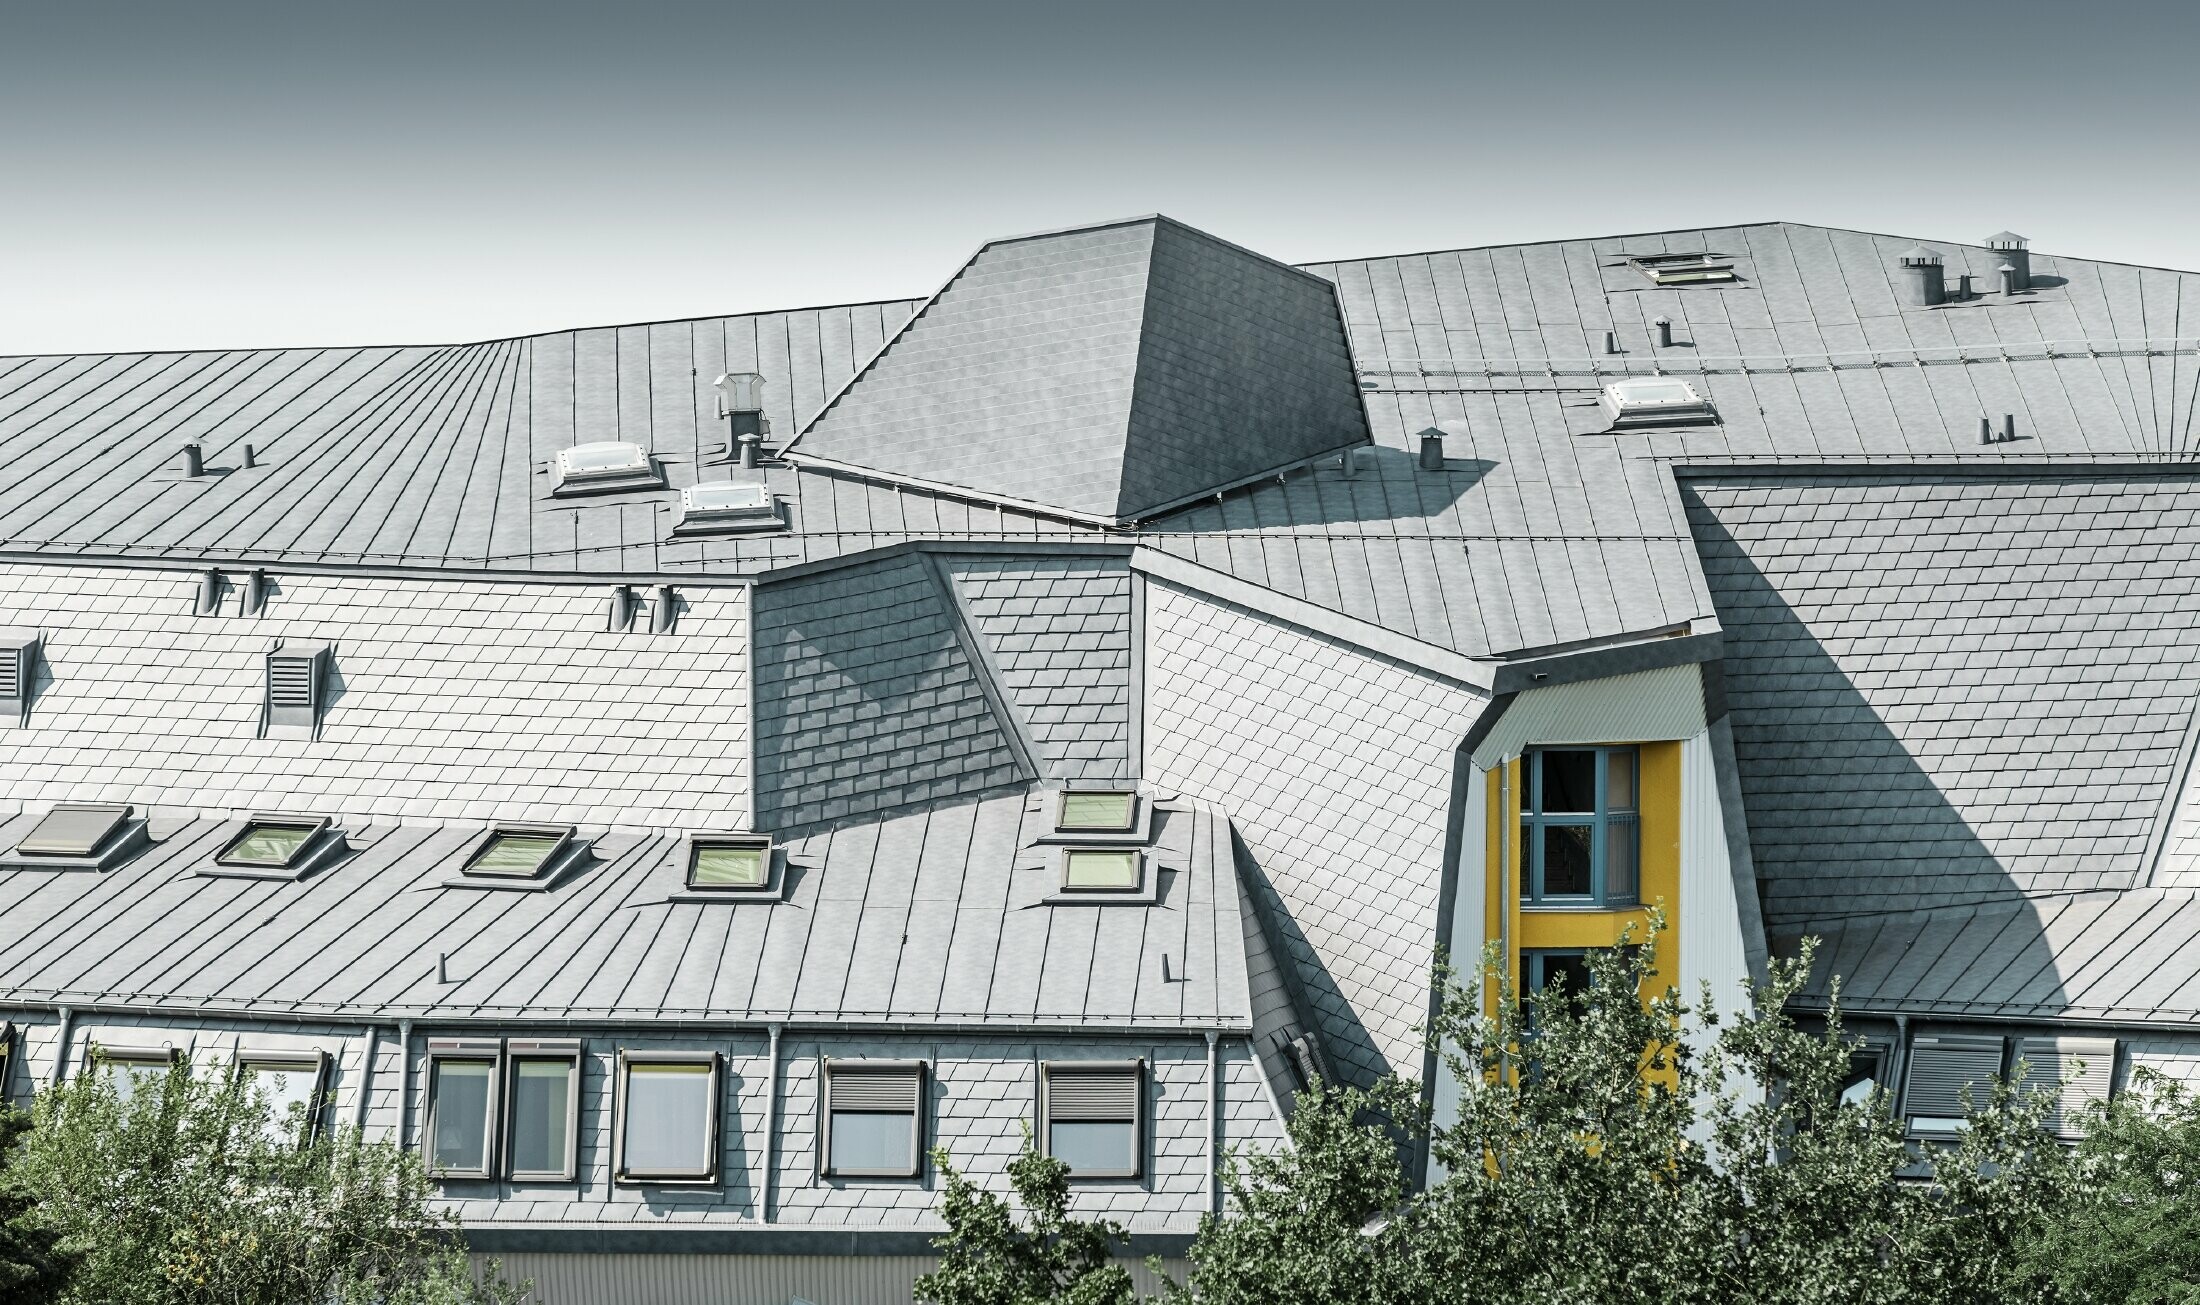 Členitá střecha s vikýři a klikatými rohy pečovatelského domu pokrytá falcovaným šindelem a svitkovým plechem PREFALZ v barvě P.10 břidlicové